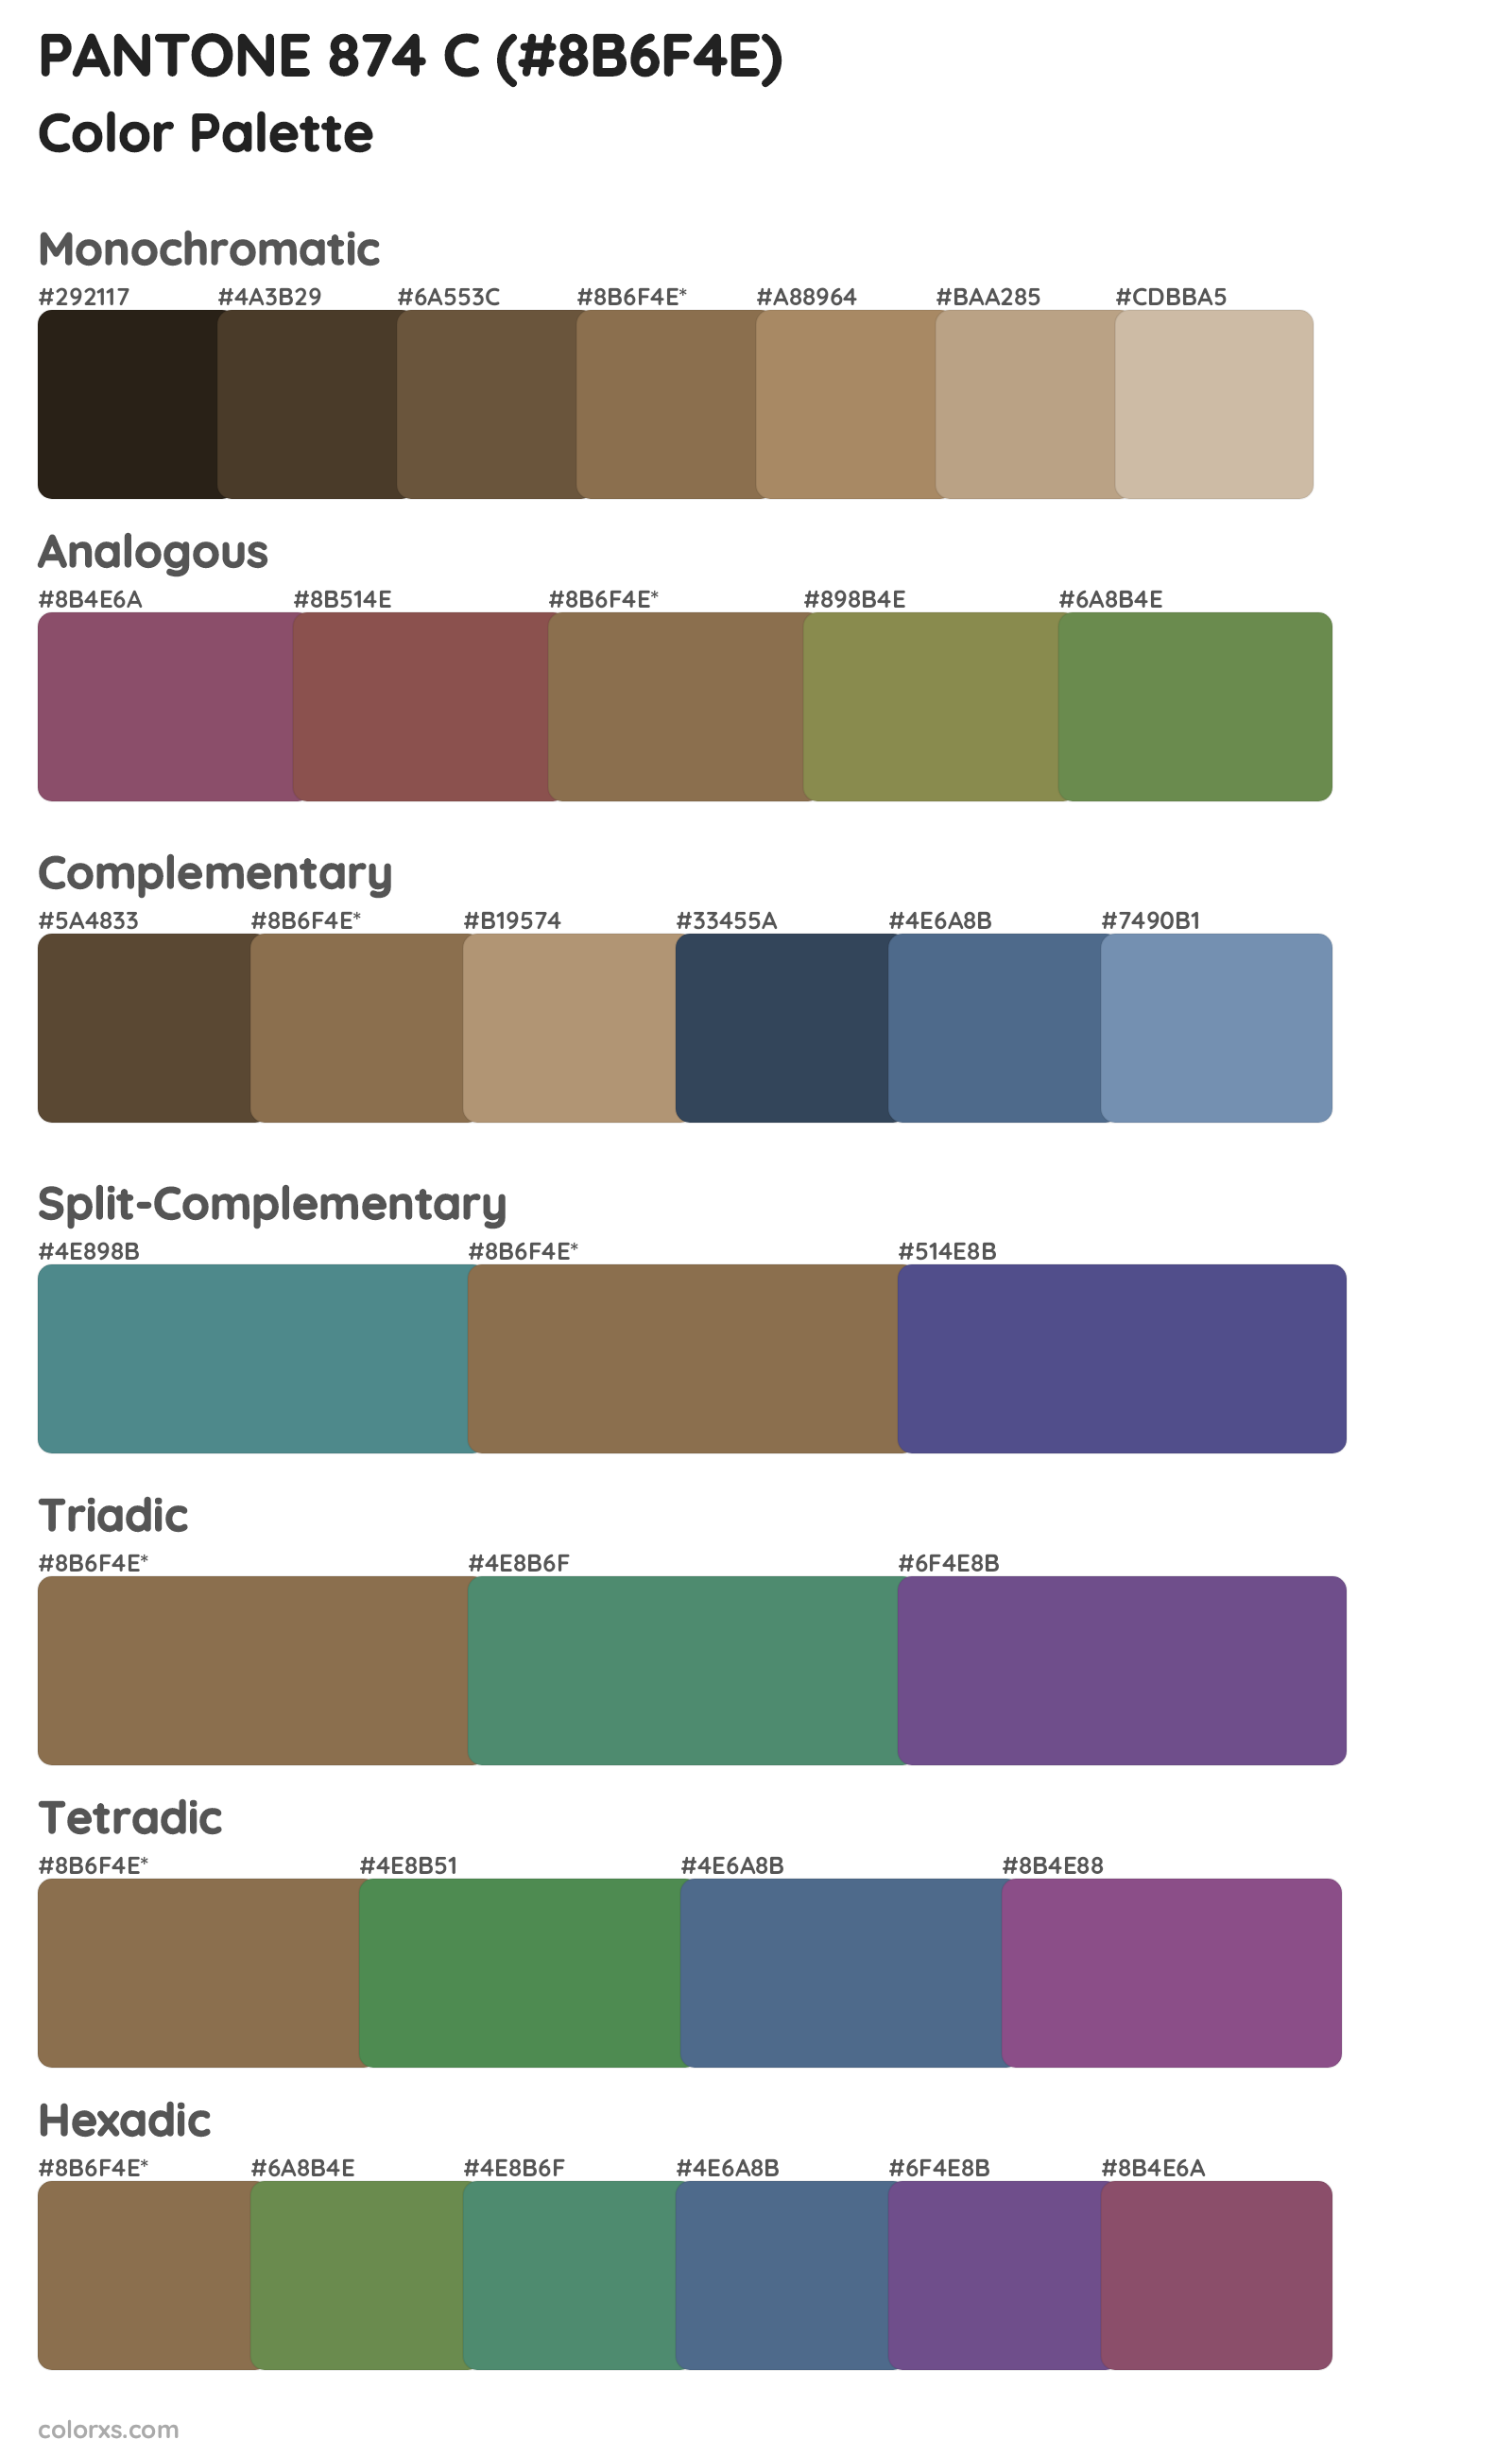 PANTONE 874 C Color Scheme Palettes